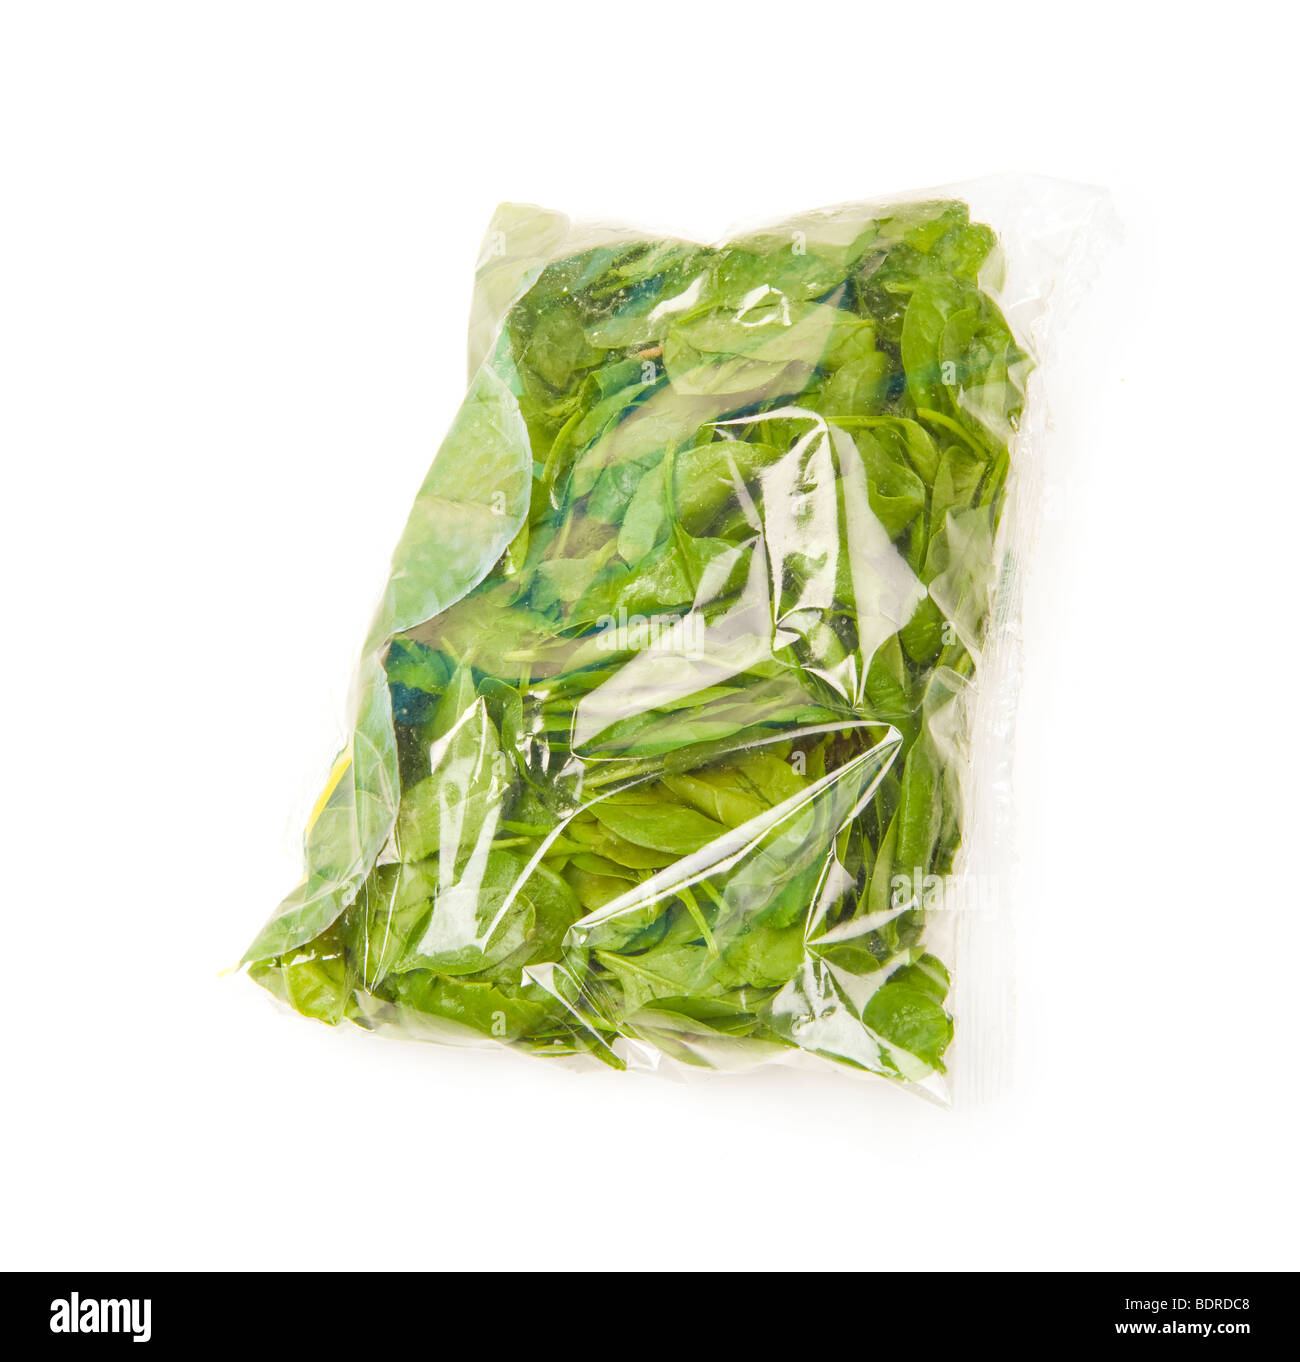 Baby Spinat einzelne Blätter Salat Koch Kochen grüne Greenfood Essen Pack  Kunststoff Folie Film Spinatsch Gemüse vegetarisches frisch verpackt  Stockfotografie - Alamy